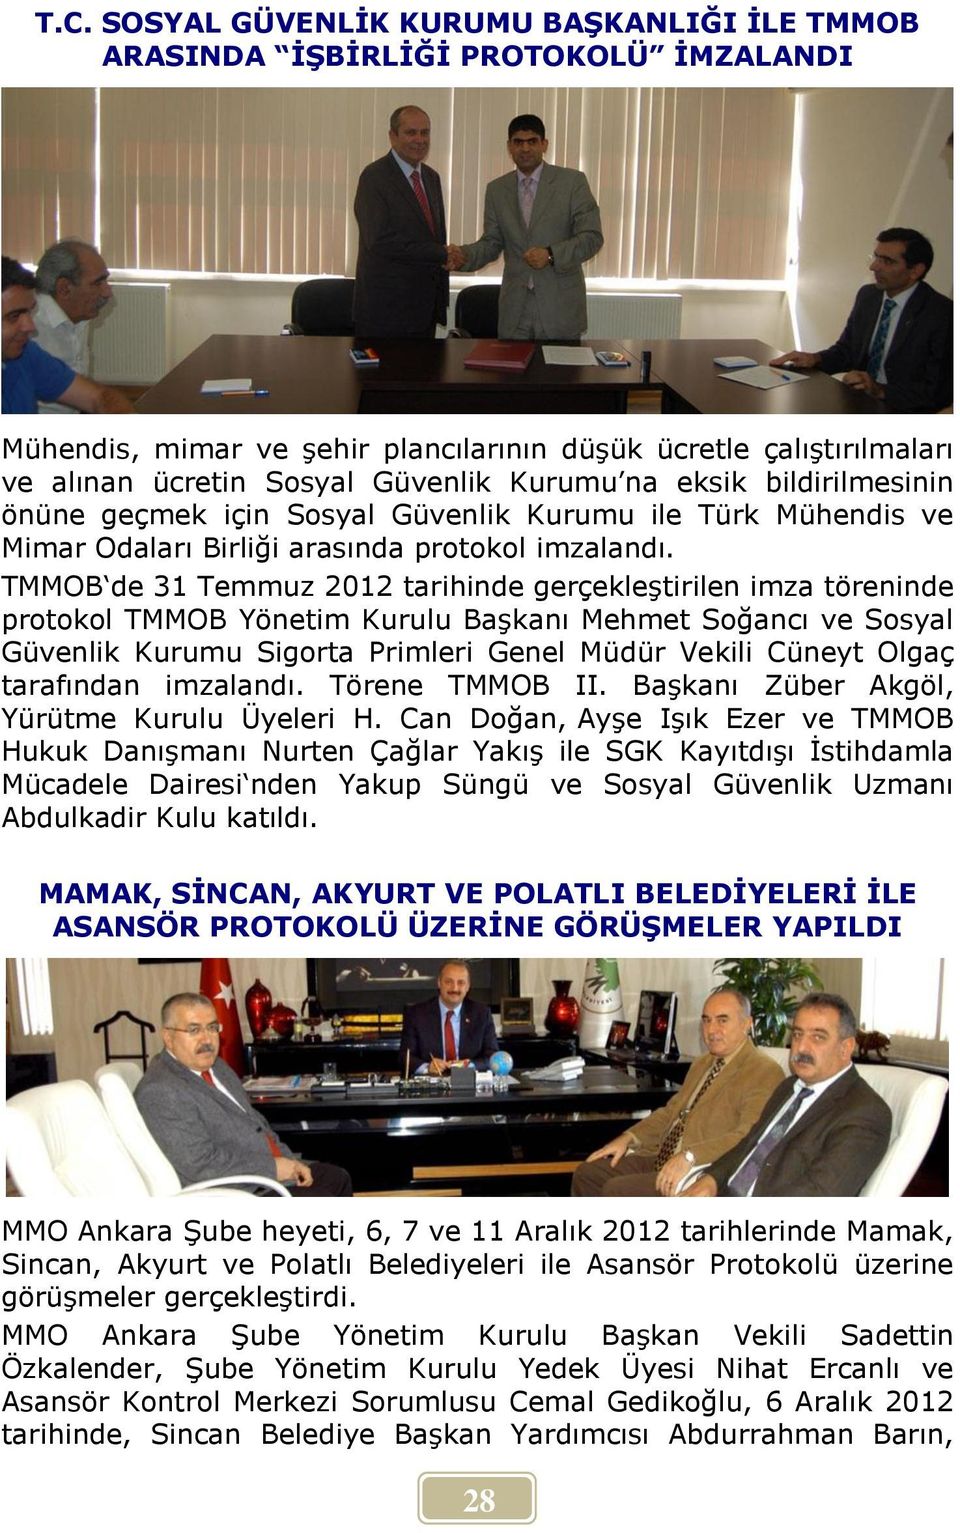 TMMOB de 31 Temmuz 2012 tarihinde gerçekleştirilen imza töreninde protokol TMMOB Yönetim Kurulu Başkanı Mehmet Soğancı ve Sosyal Güvenlik Kurumu Sigorta Primleri Genel Müdür Vekili Cüneyt Olgaç